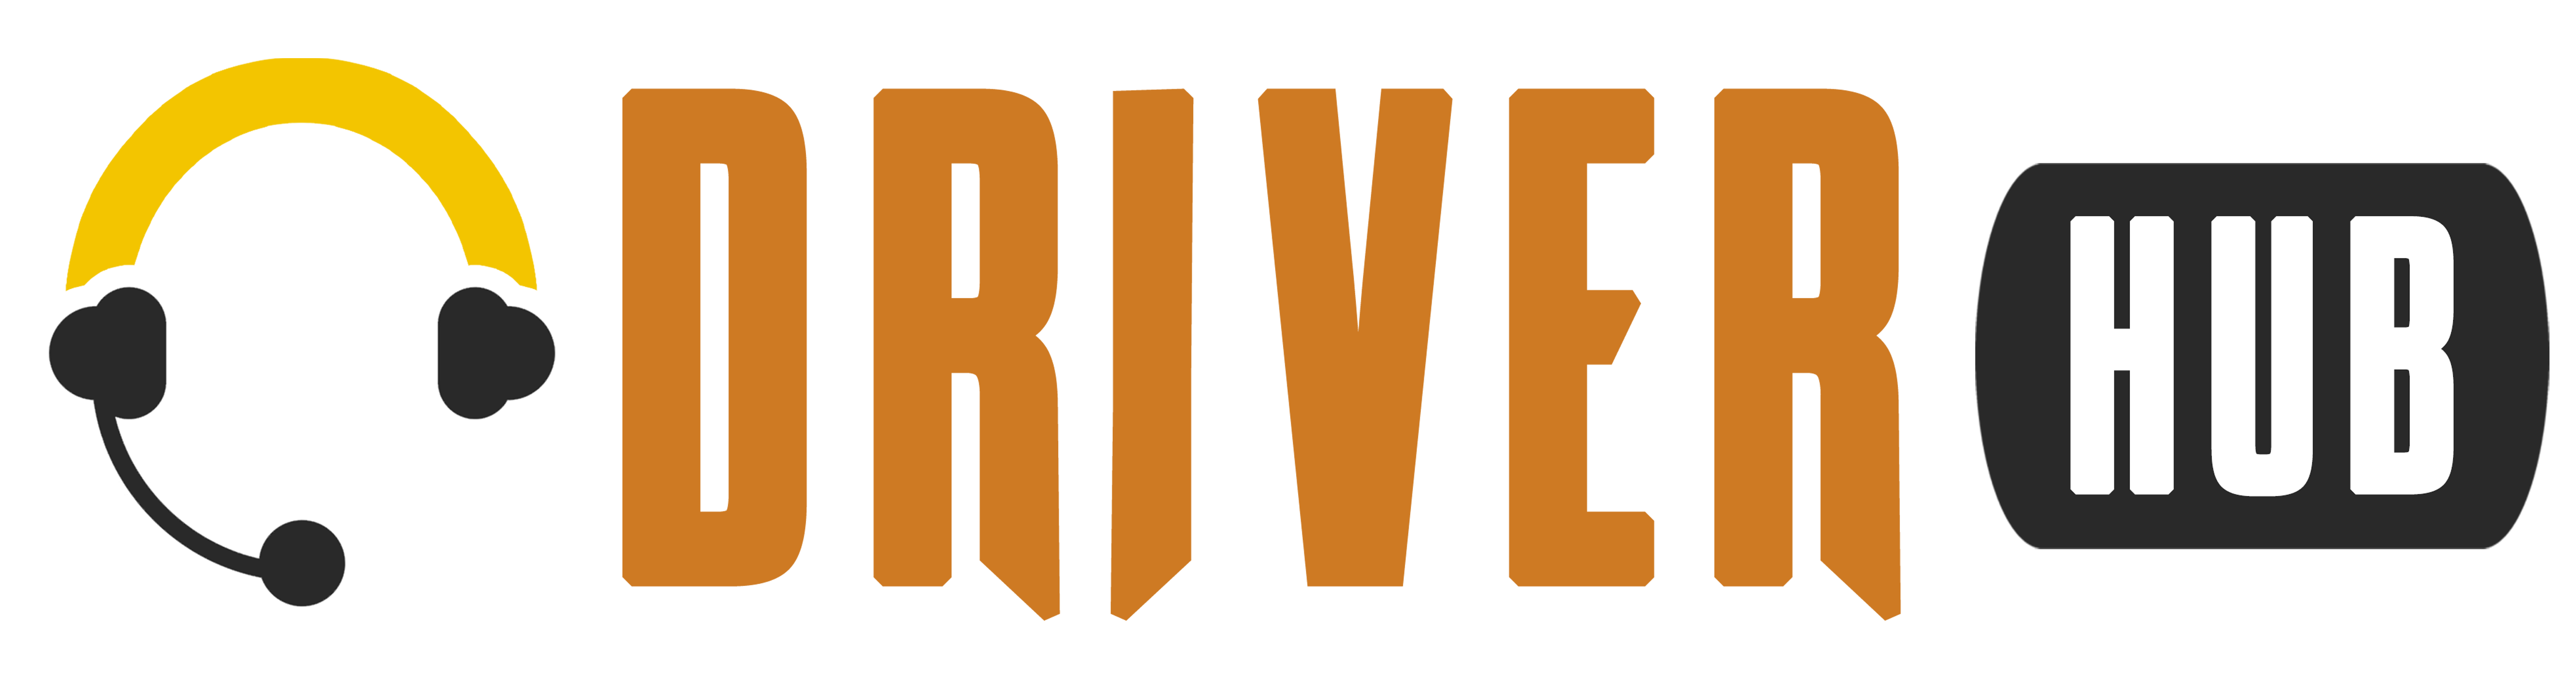 Drivers Hub Rwanda